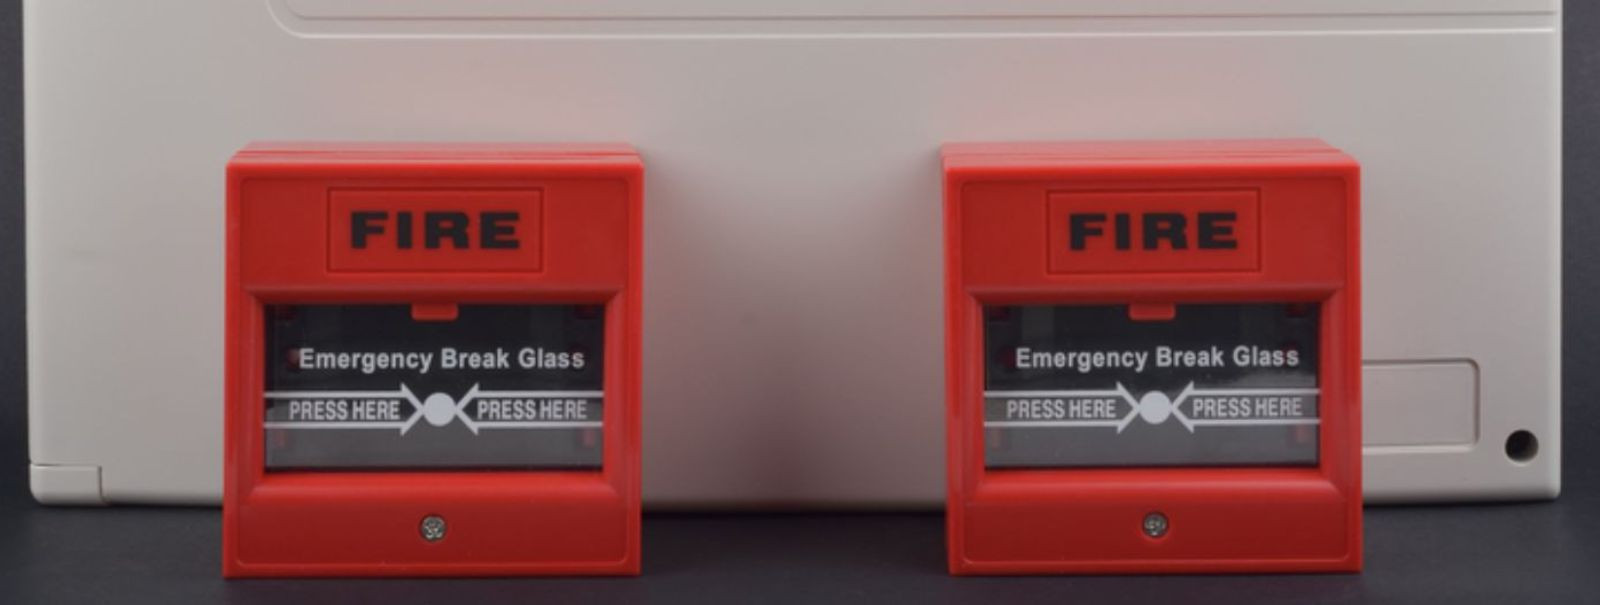 Tulekahjusignalisatsioonisüsteem on süsteem, mis annab automaatselt häire tekkivast tulekahju ohust. Signalisatsioon teavitab ohust, et säästa inimeste elud ja